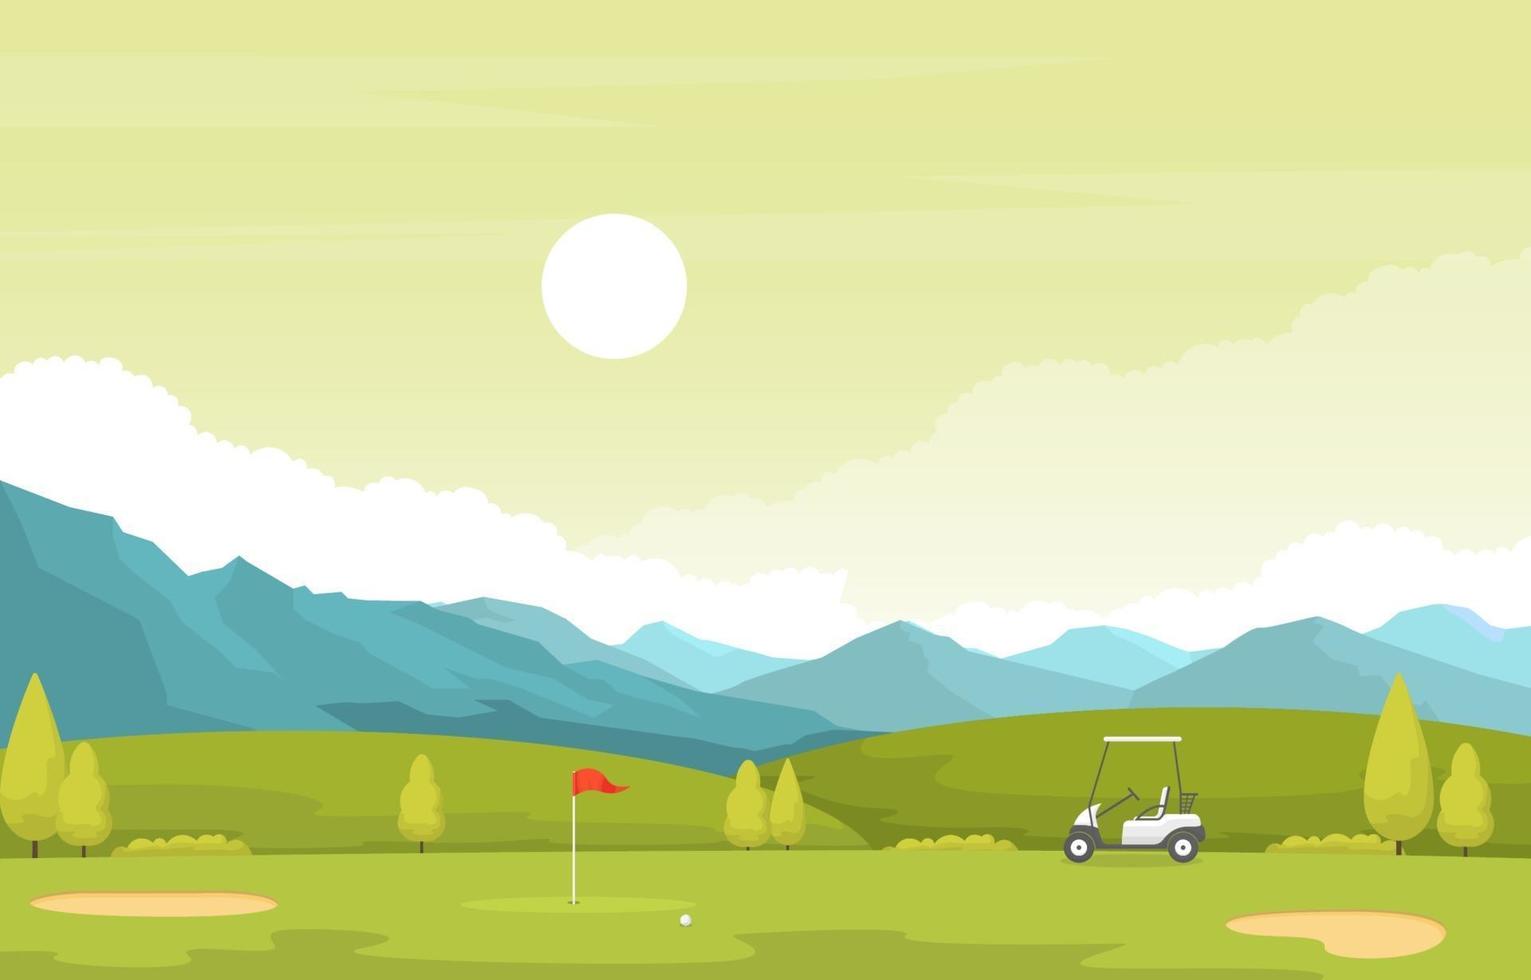 terrain de golf avec drapeau rouge, voiturette de golf et montagnes vecteur